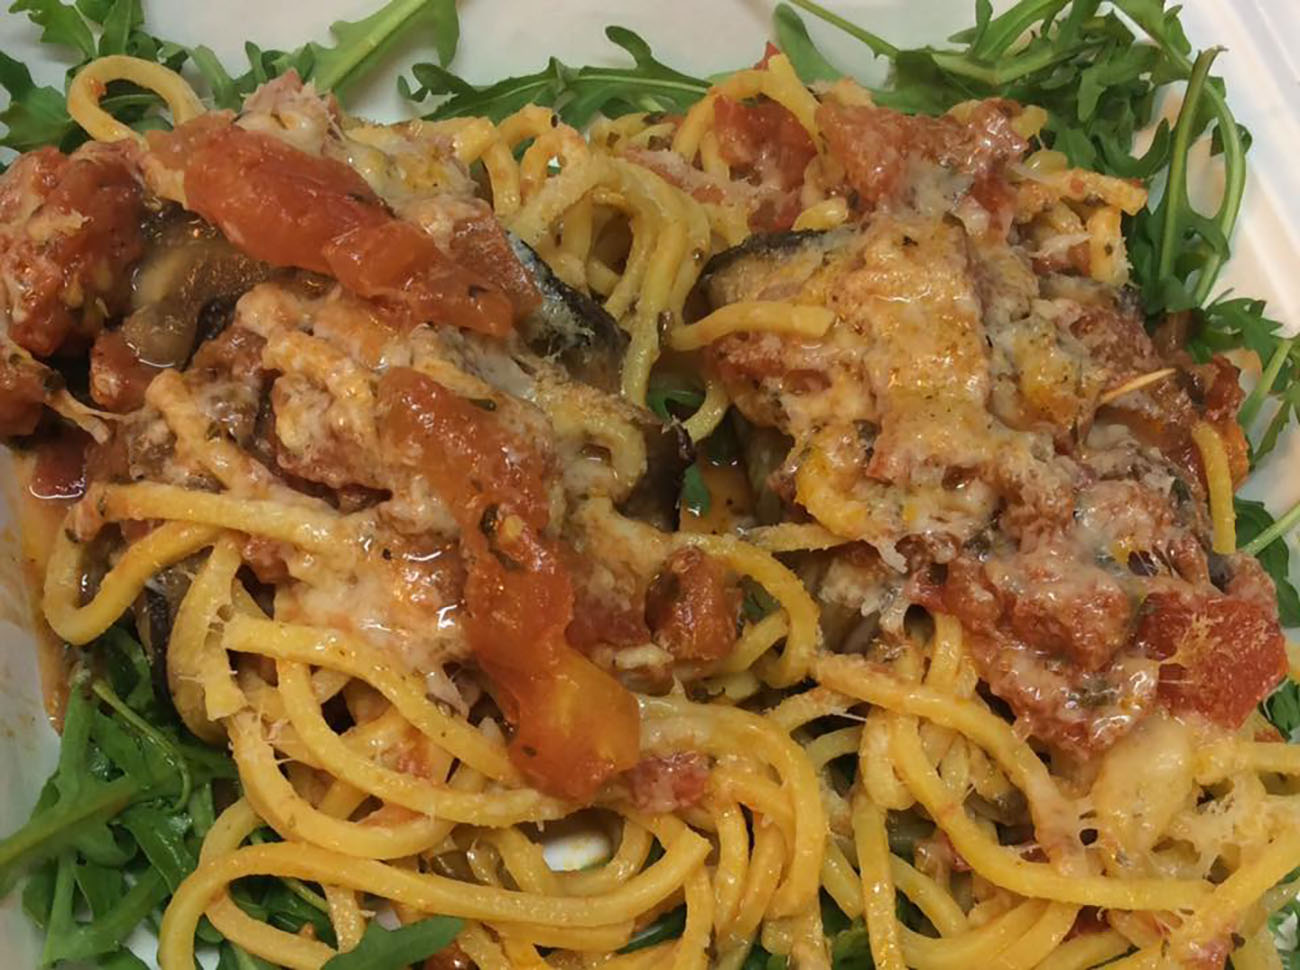 spaghetti-alla-caporalessa,-altro-che-norma-la-ricetta-napoletana-che-batte-la-siciliana.-piu-facili,-veloci-e-super-cremosi